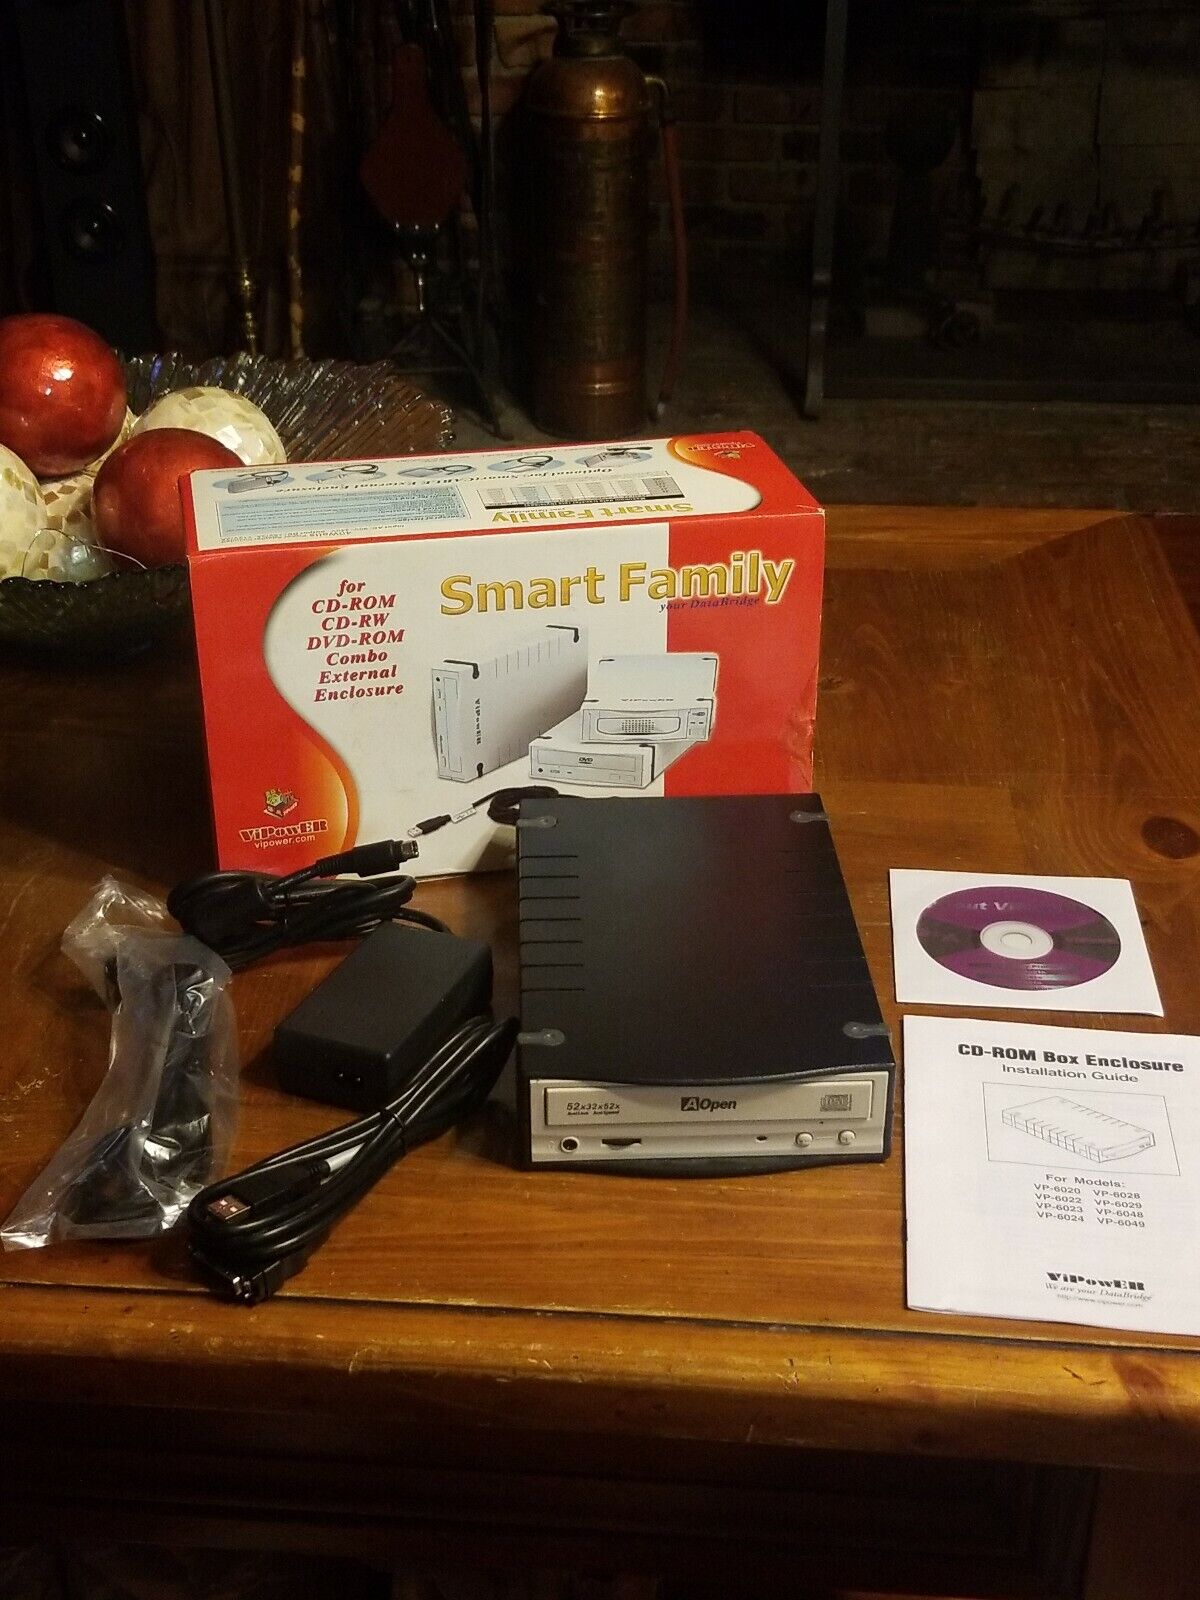 EXTERNAL burner smart family 5.25" dvd-rom cd-rom cd-rw box